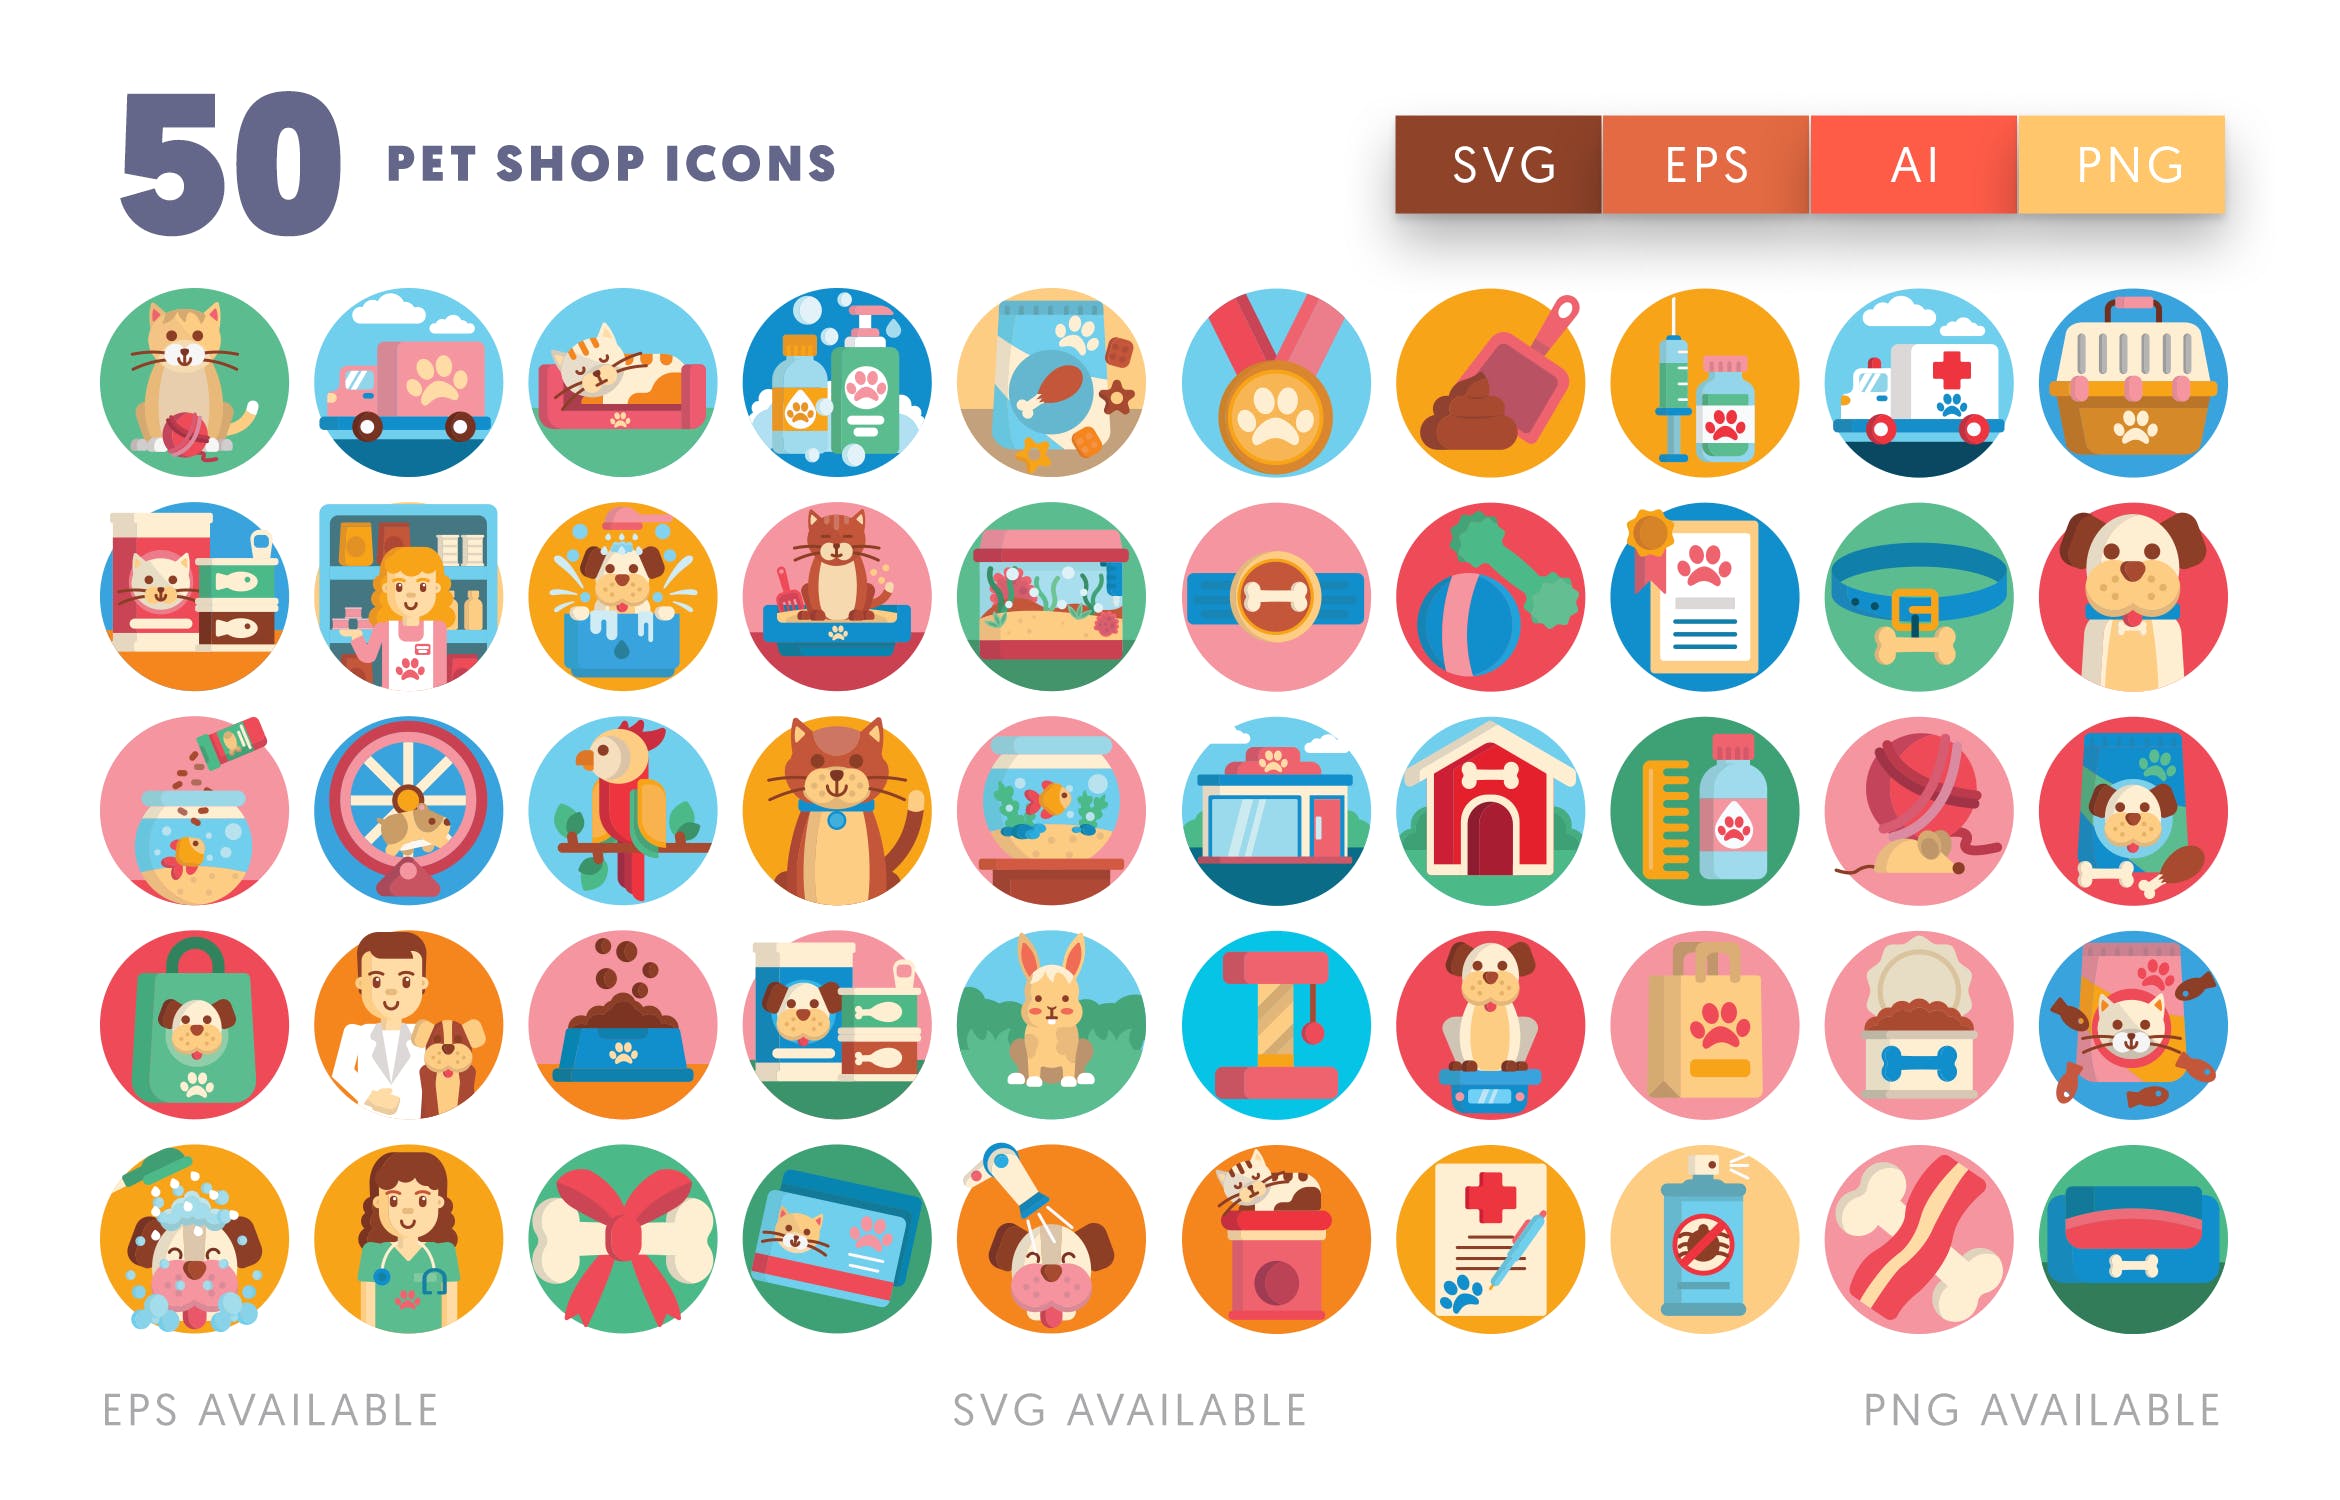 50枚宠物主题矢量圆形素材库精选图标 Pet Shop Icons插图(1)